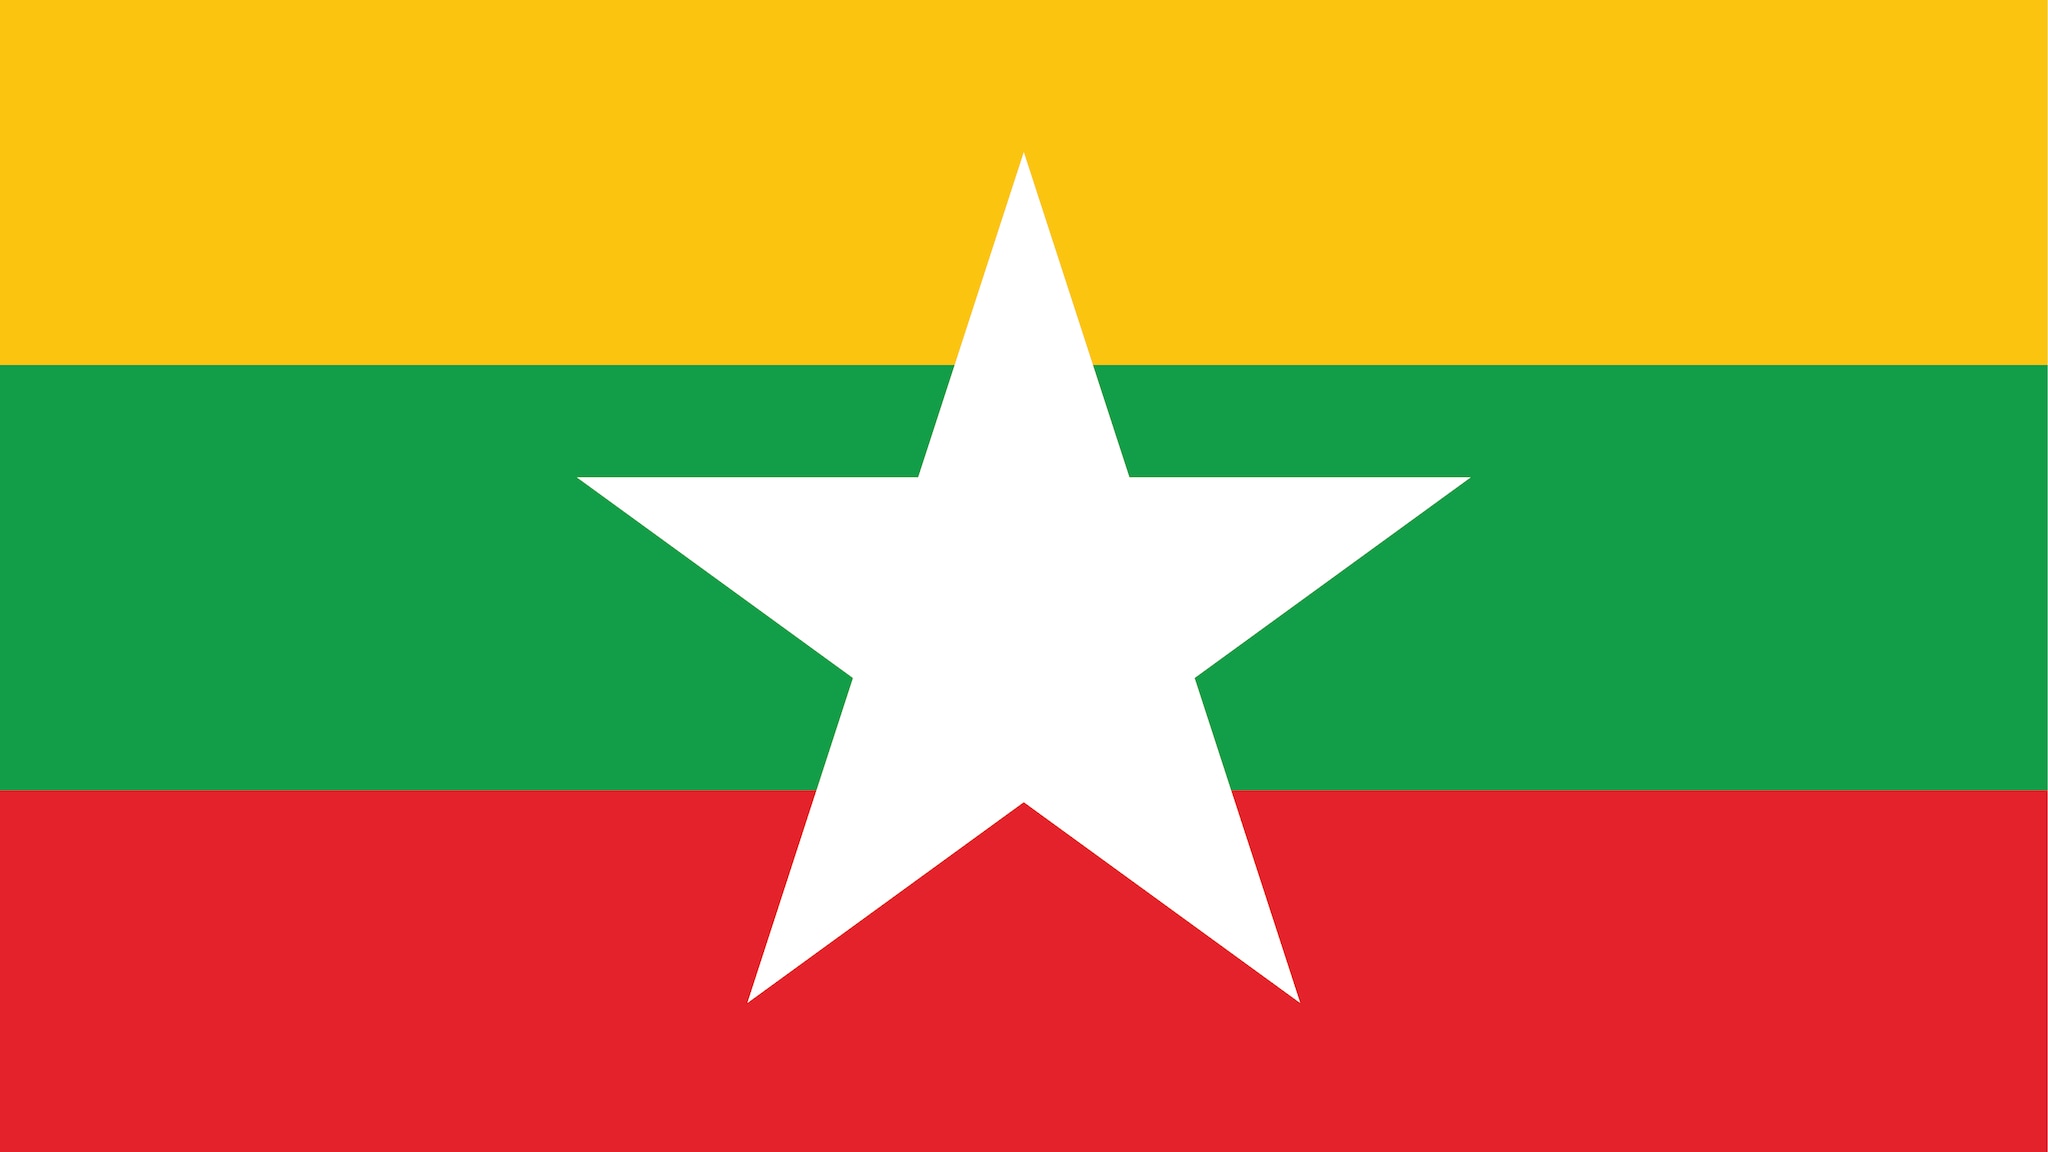 image of the Burma flag